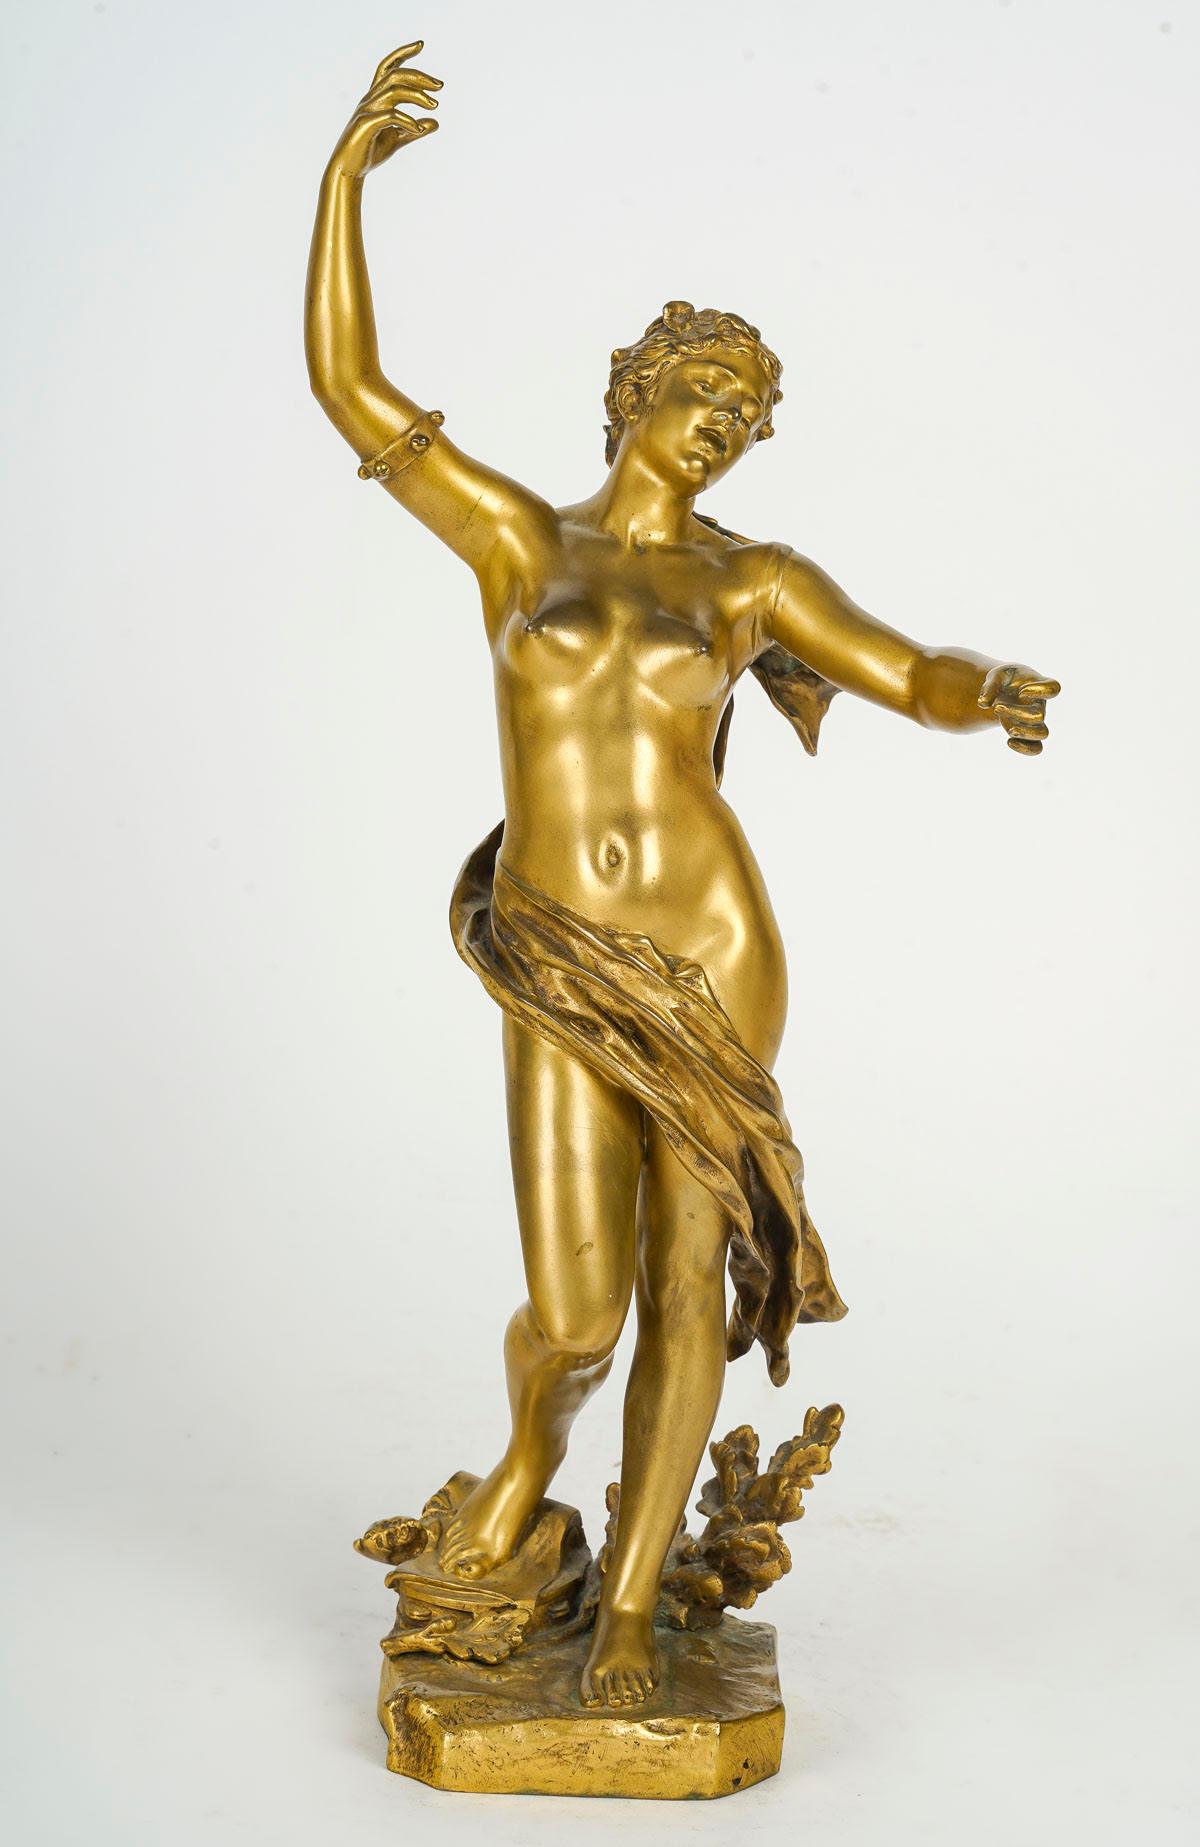 Sculpture en bronze doré de Felix Charpentier, XIXe siècle, époque Napoléon III.

Sculpture d'époque Napoléon III par Felix Charpentier représentant une femme drapée en bronze doré.
h : 40cm, l : 19cm, p : 15cm